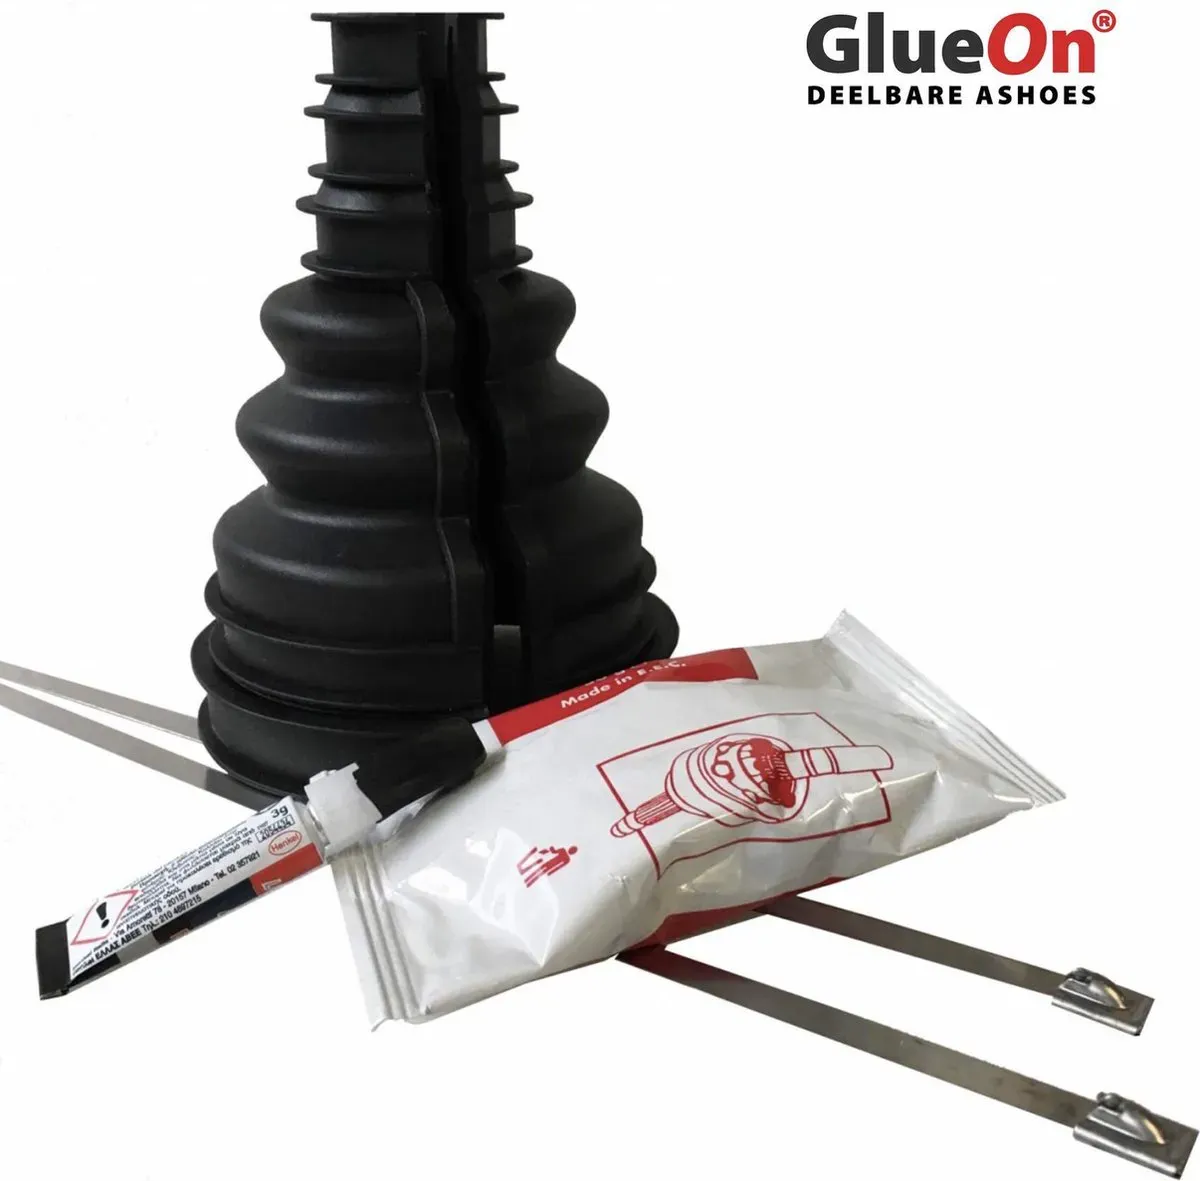 GlueOn deelbare ashoes set - Zwart - 90-100 mm Aandrijfashoes zonder demontage